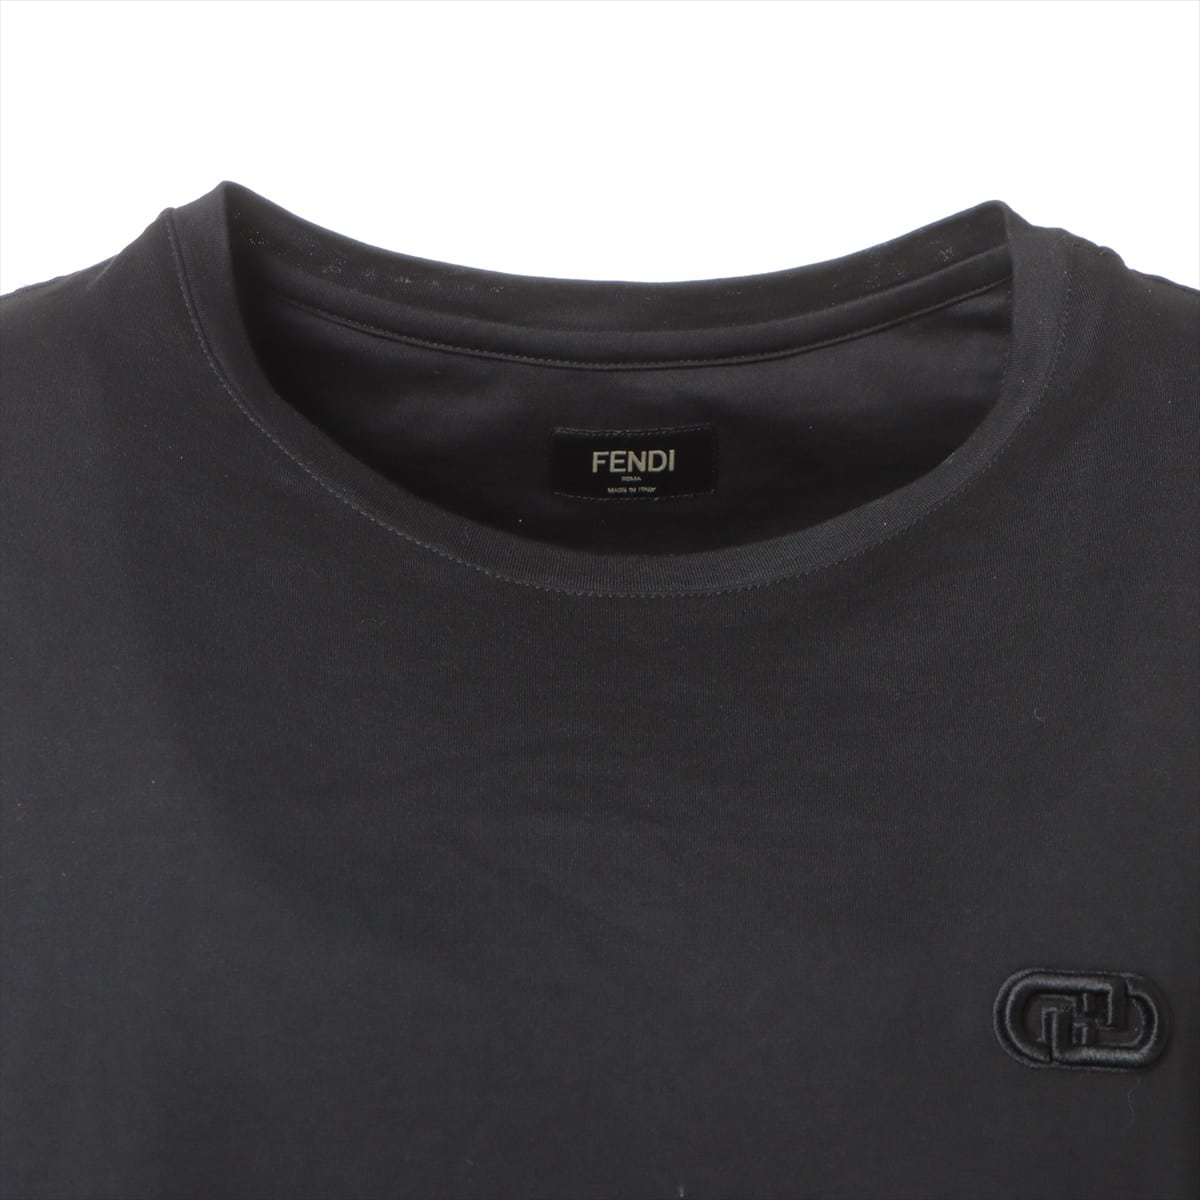 フェンディ オーロック 22年 コットン Tシャツ XL メンズ ブラック FF